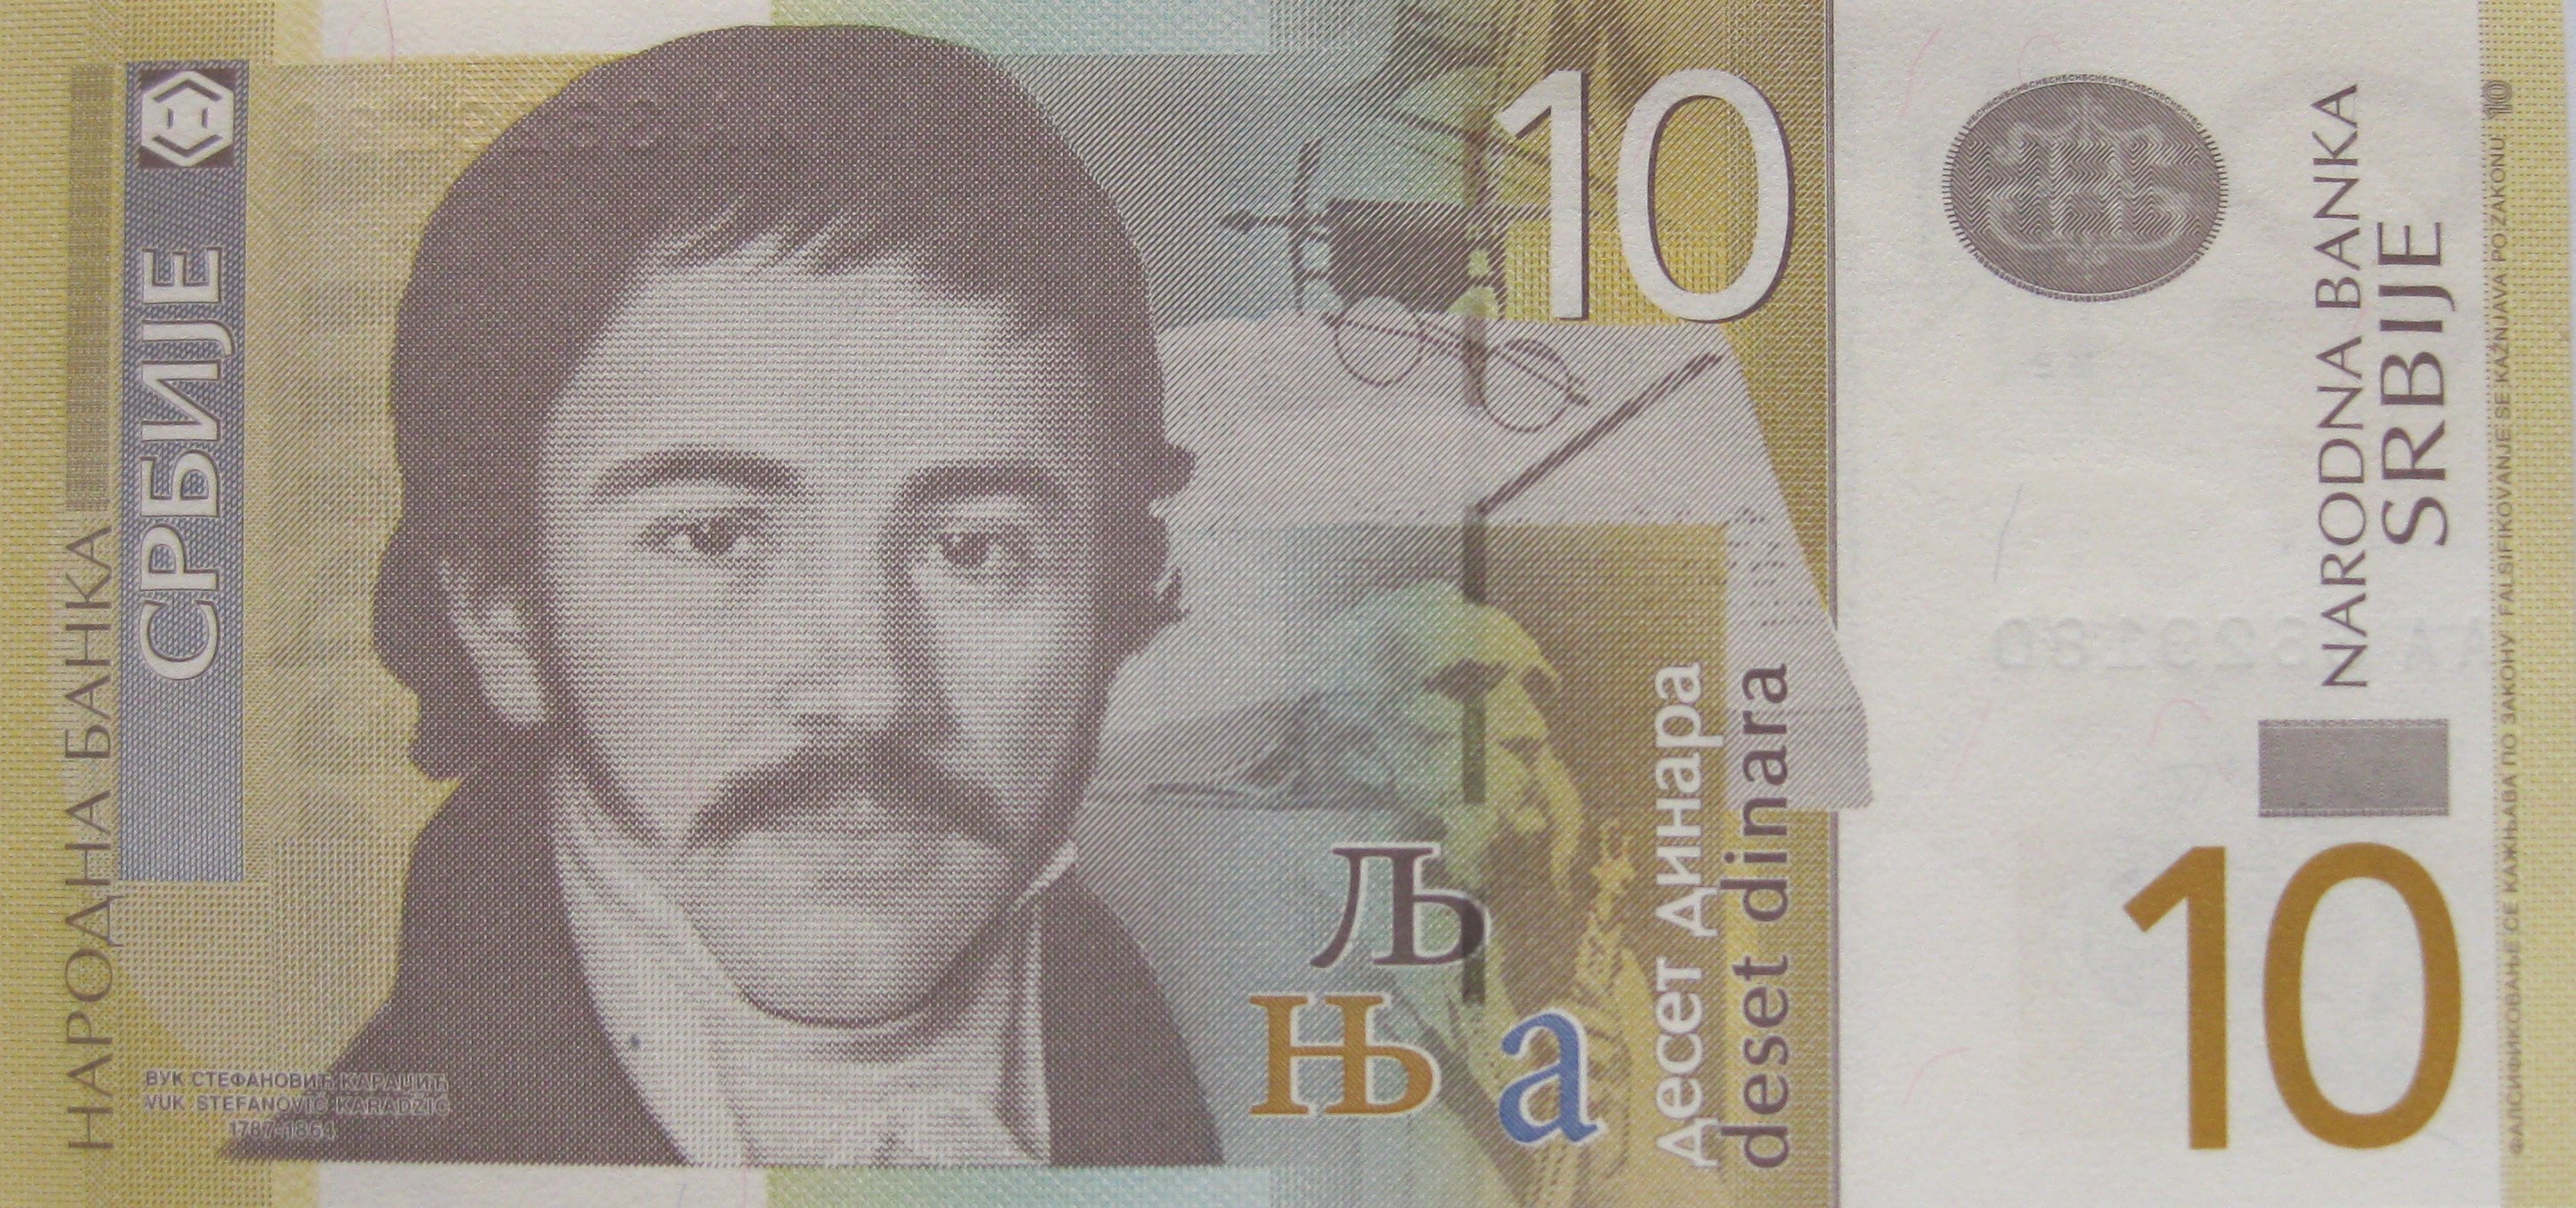 geld - serbia 10